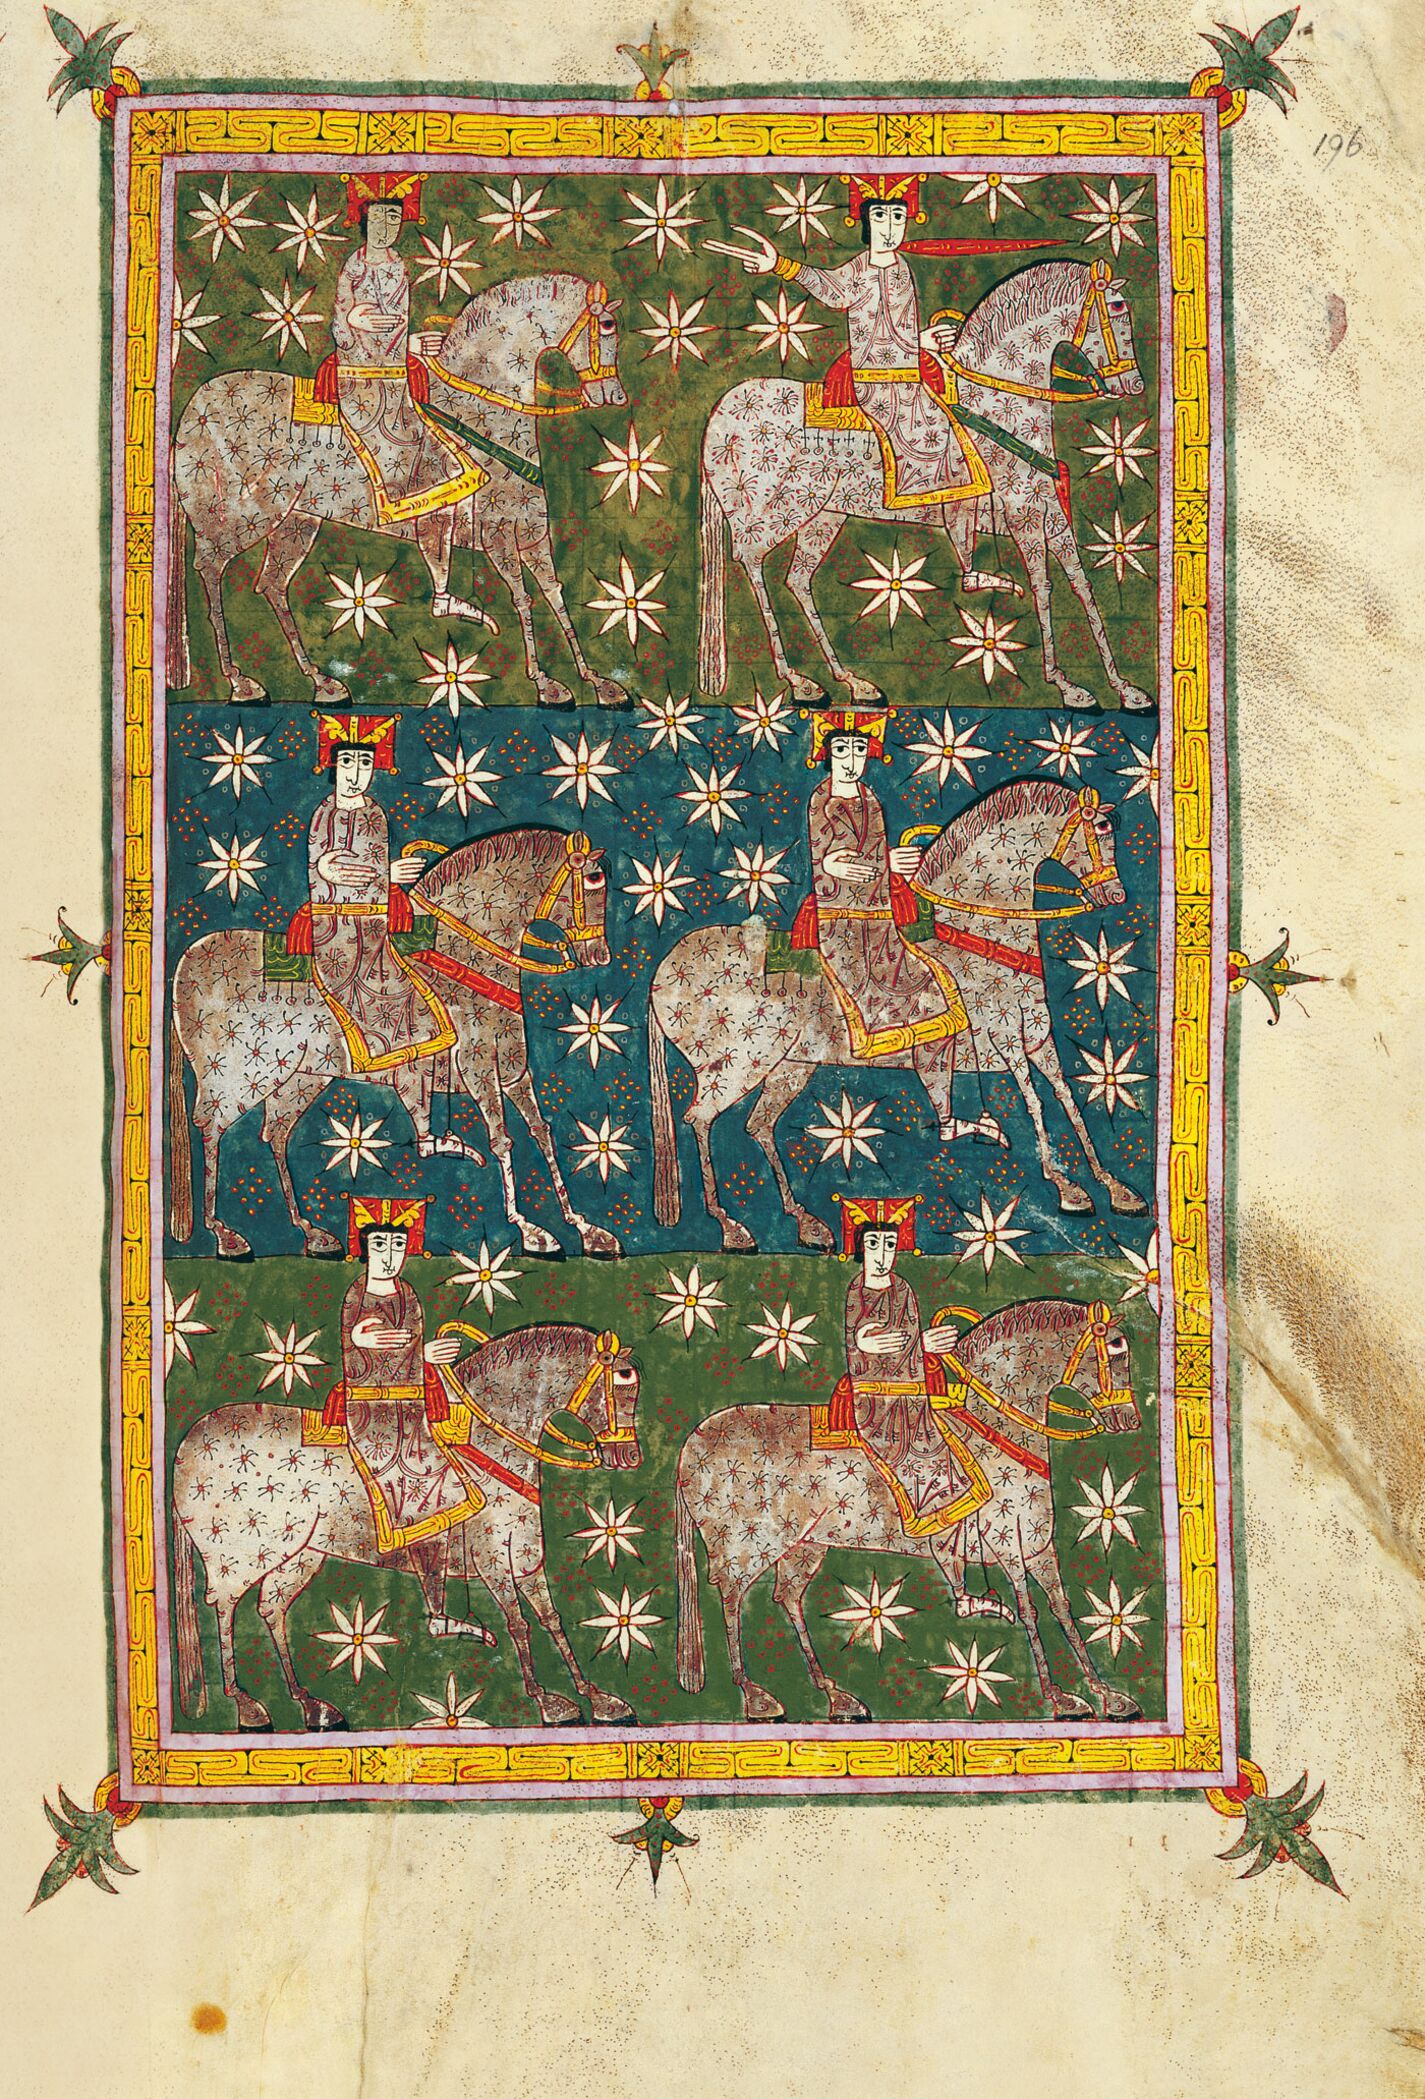 f. 196r, El Jinete Fiel y Veraz sobre el caballo blanco